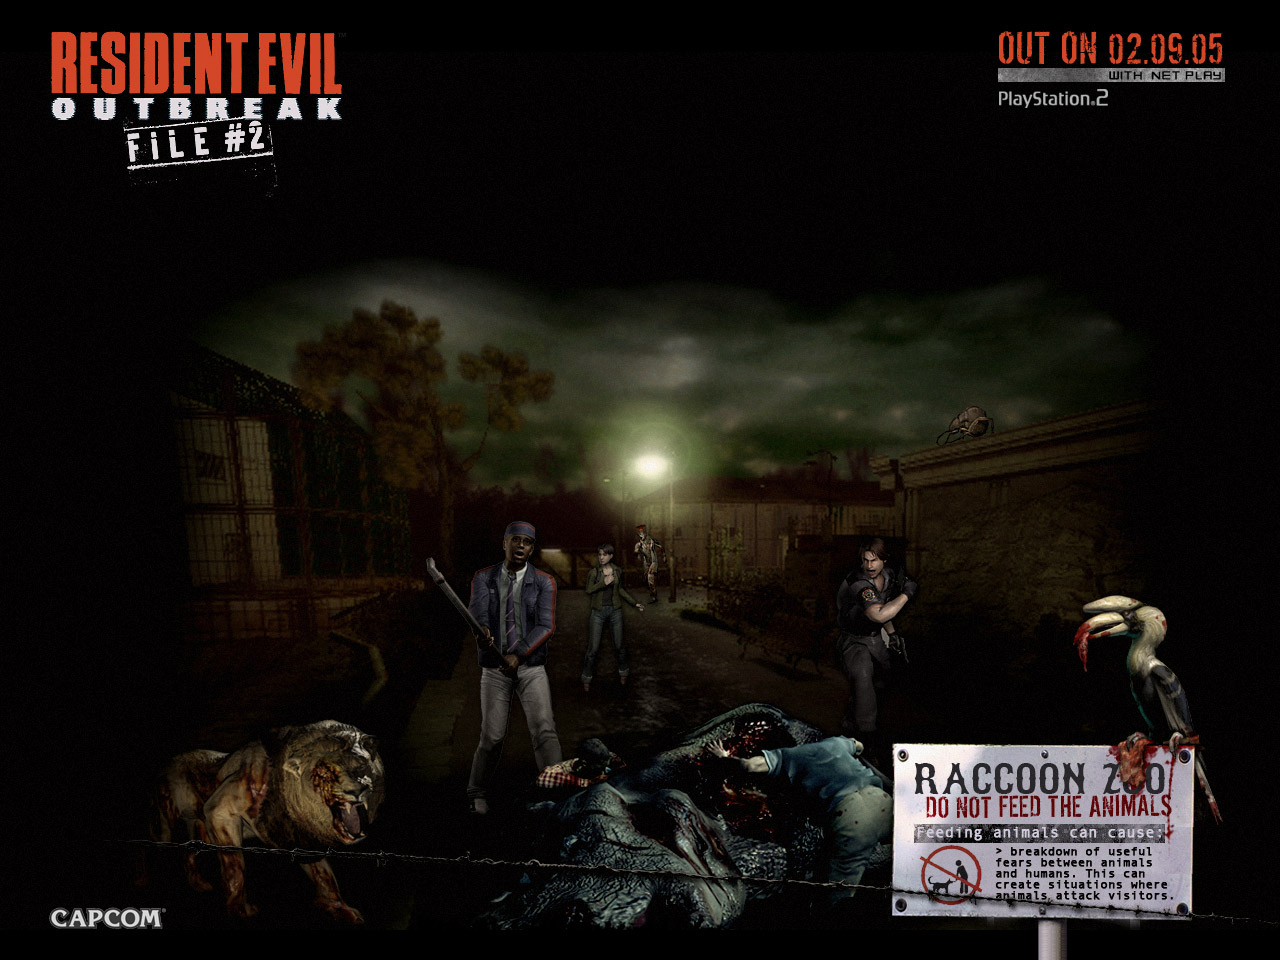 Publico Wallpaper Of Resident Evil Outbreak File